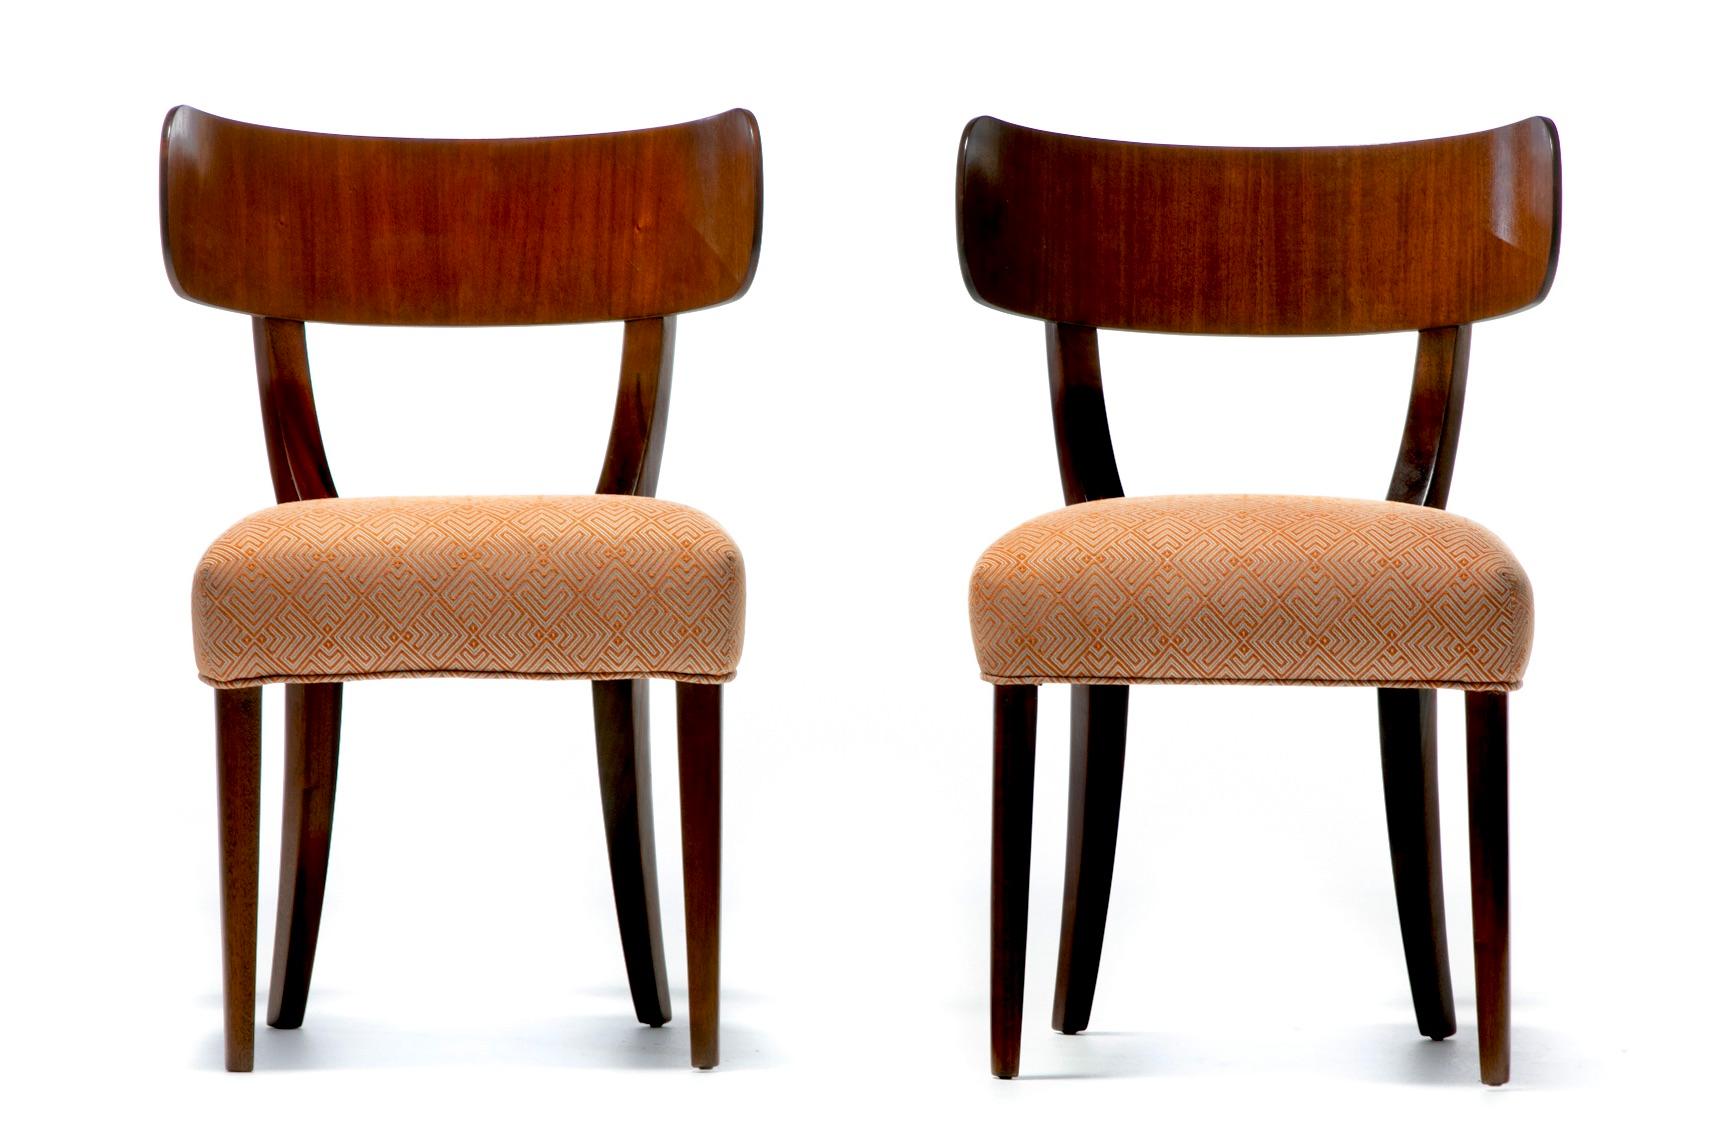 Un ensemble très rare de dix chaises de salle à manger Klismos, conçues par Carl Malmsten en 1938 pour Widdicomb, récemment remises à neuf par des professionnels et retapissées dans le tissu Holy Hunt Great Outdoors, conçu pour un usage intérieur et